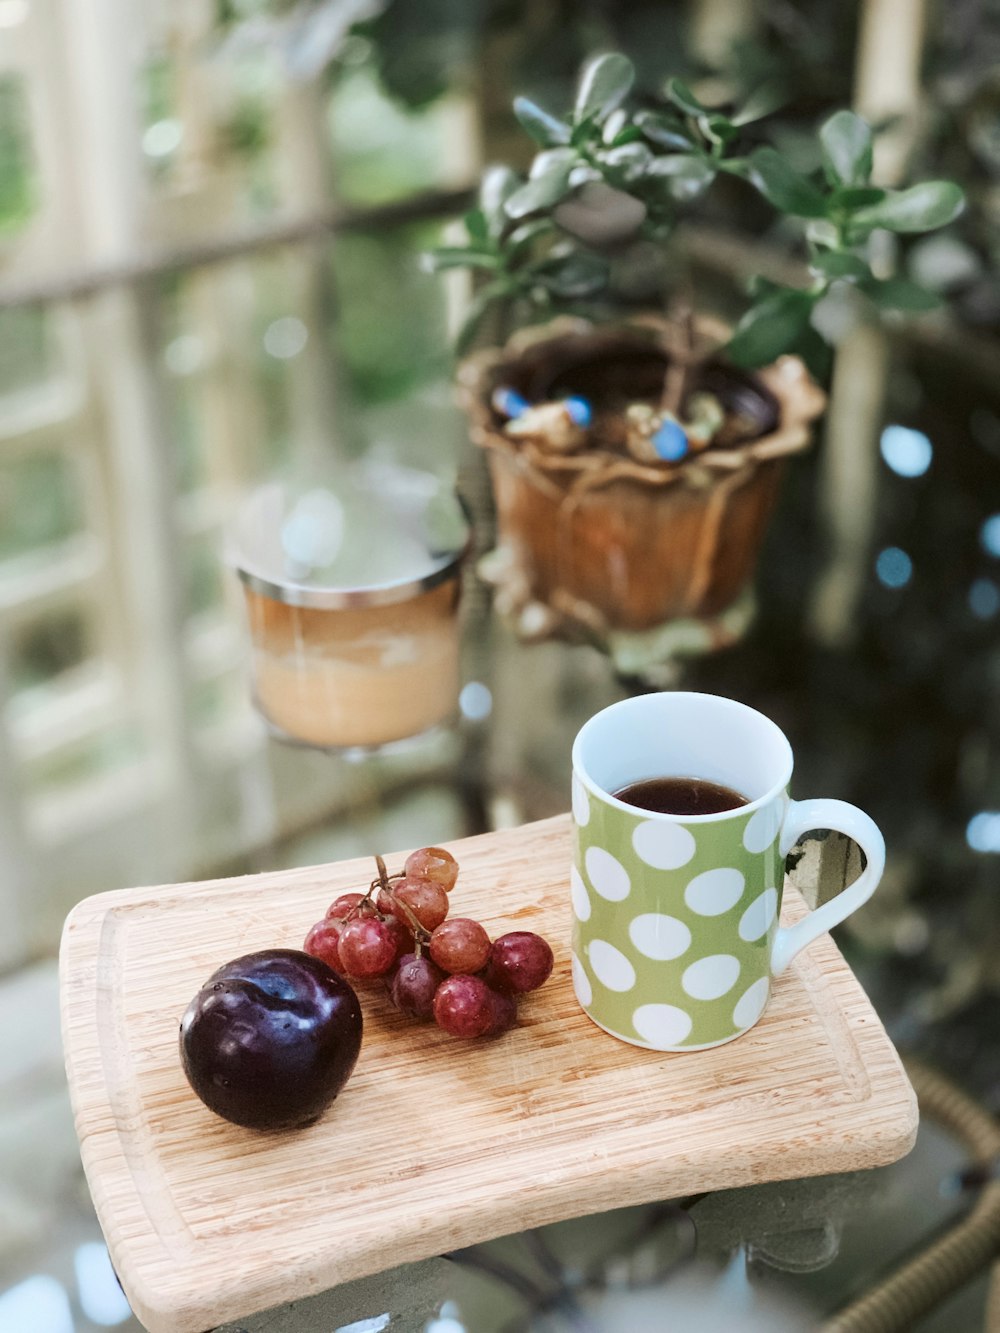 Grüne und weiße Polka-Dots-Keramikbecher und Früchte auf braunem Tablett